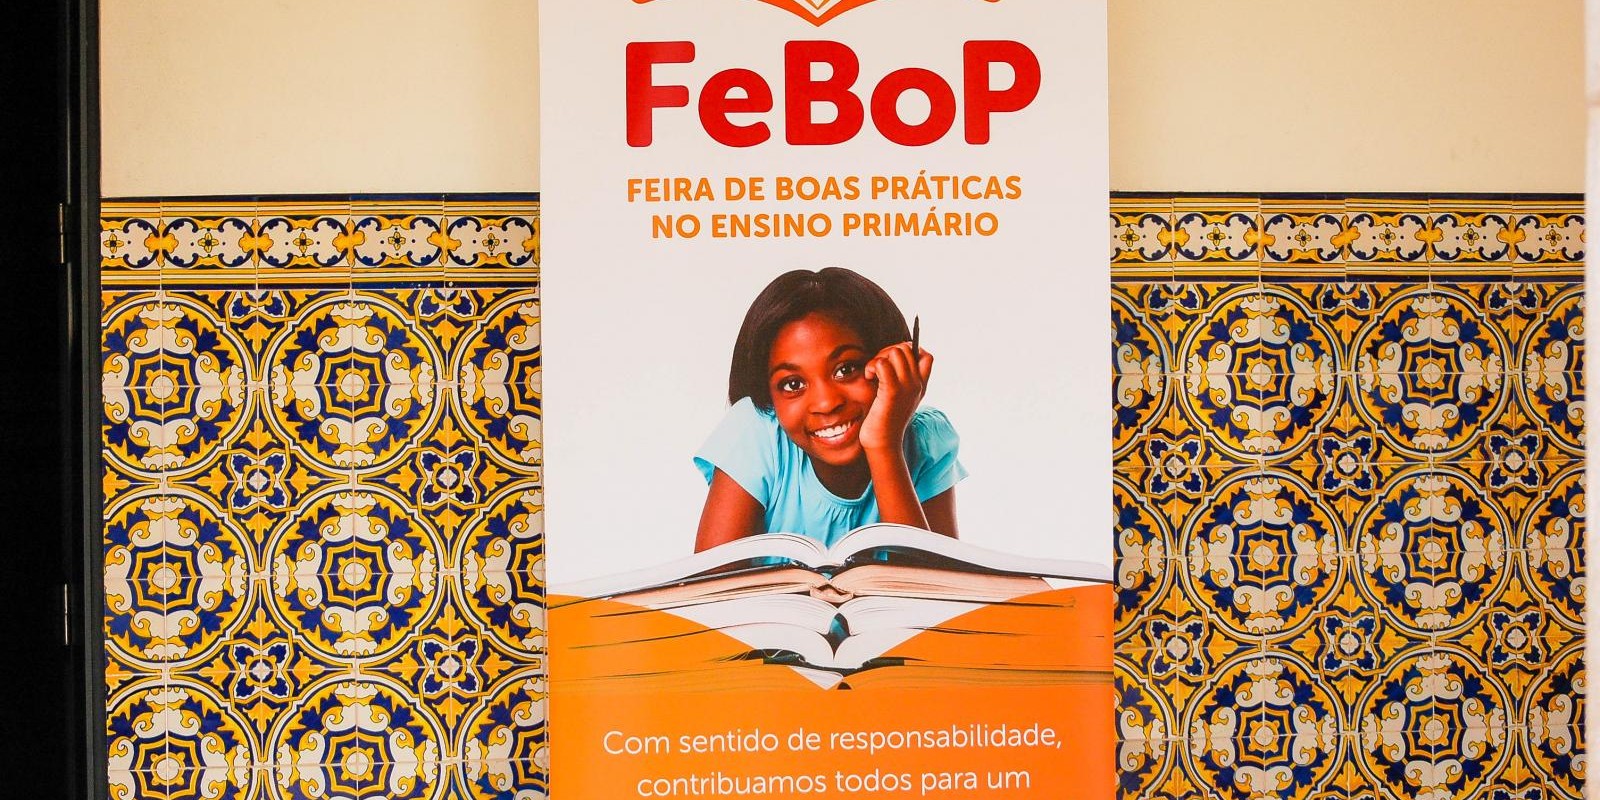 Ministério da Educação Realiza Feira de Boas Práticas “FeBoP” 2019